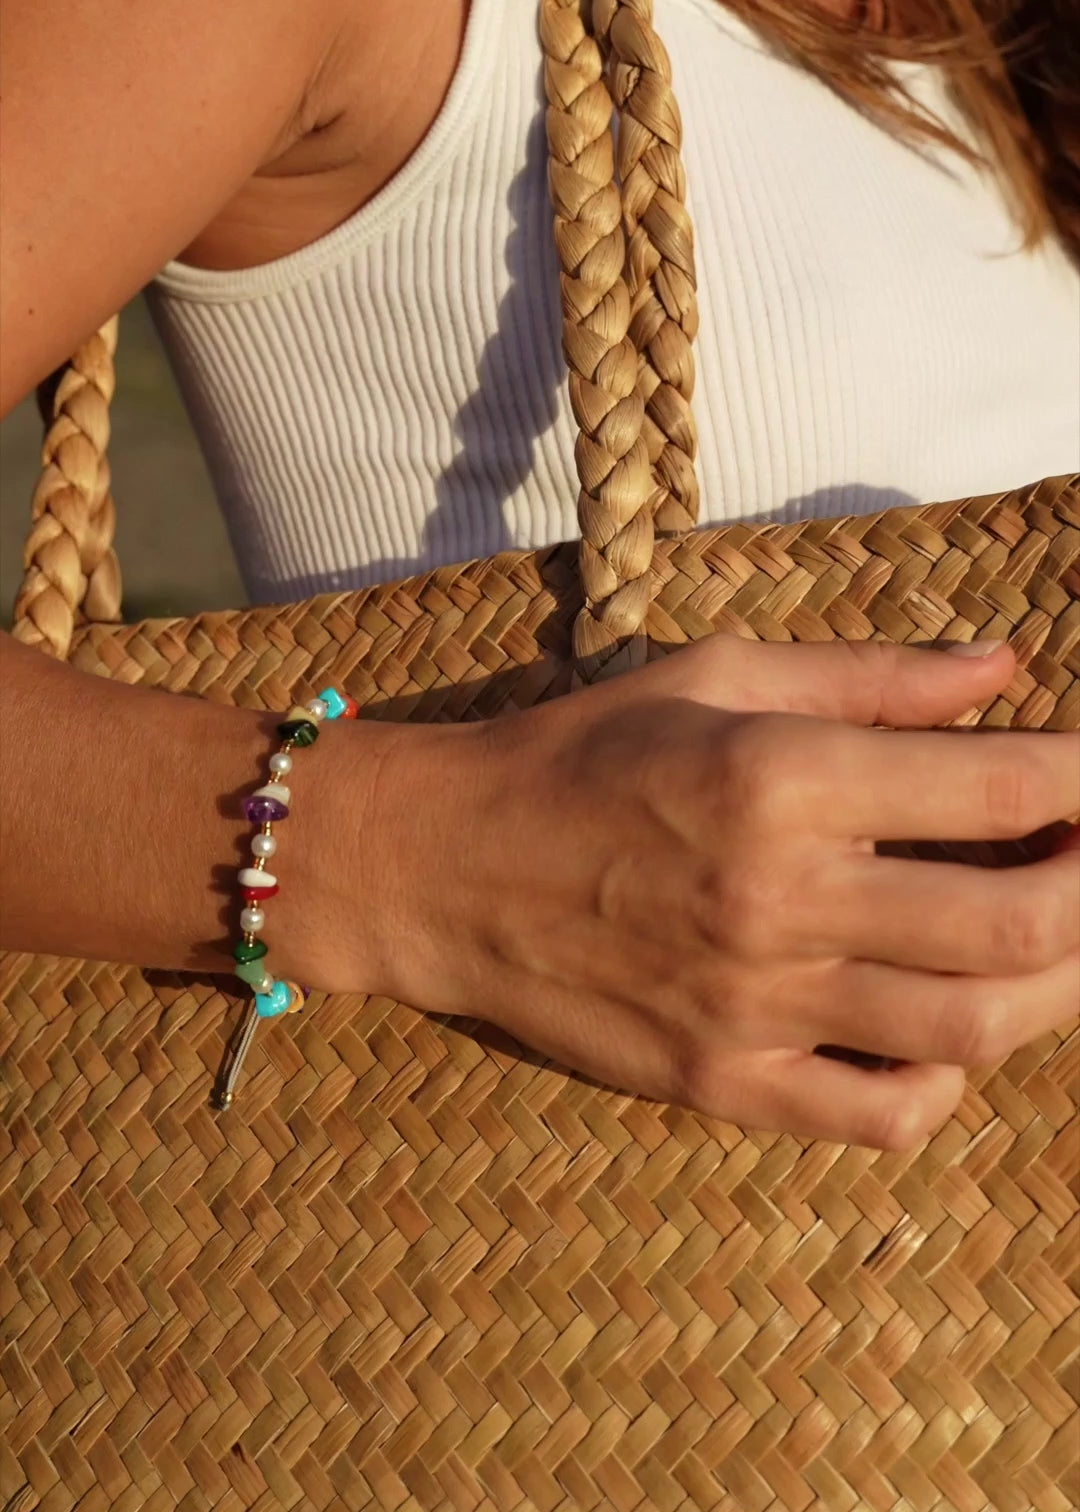 Buntes Armband | Handgemachtes Armband von VERLAN Jewellery | Flexibel verstellbar mit bunten Steinen | Fair und umweltschonend handmade in Bali